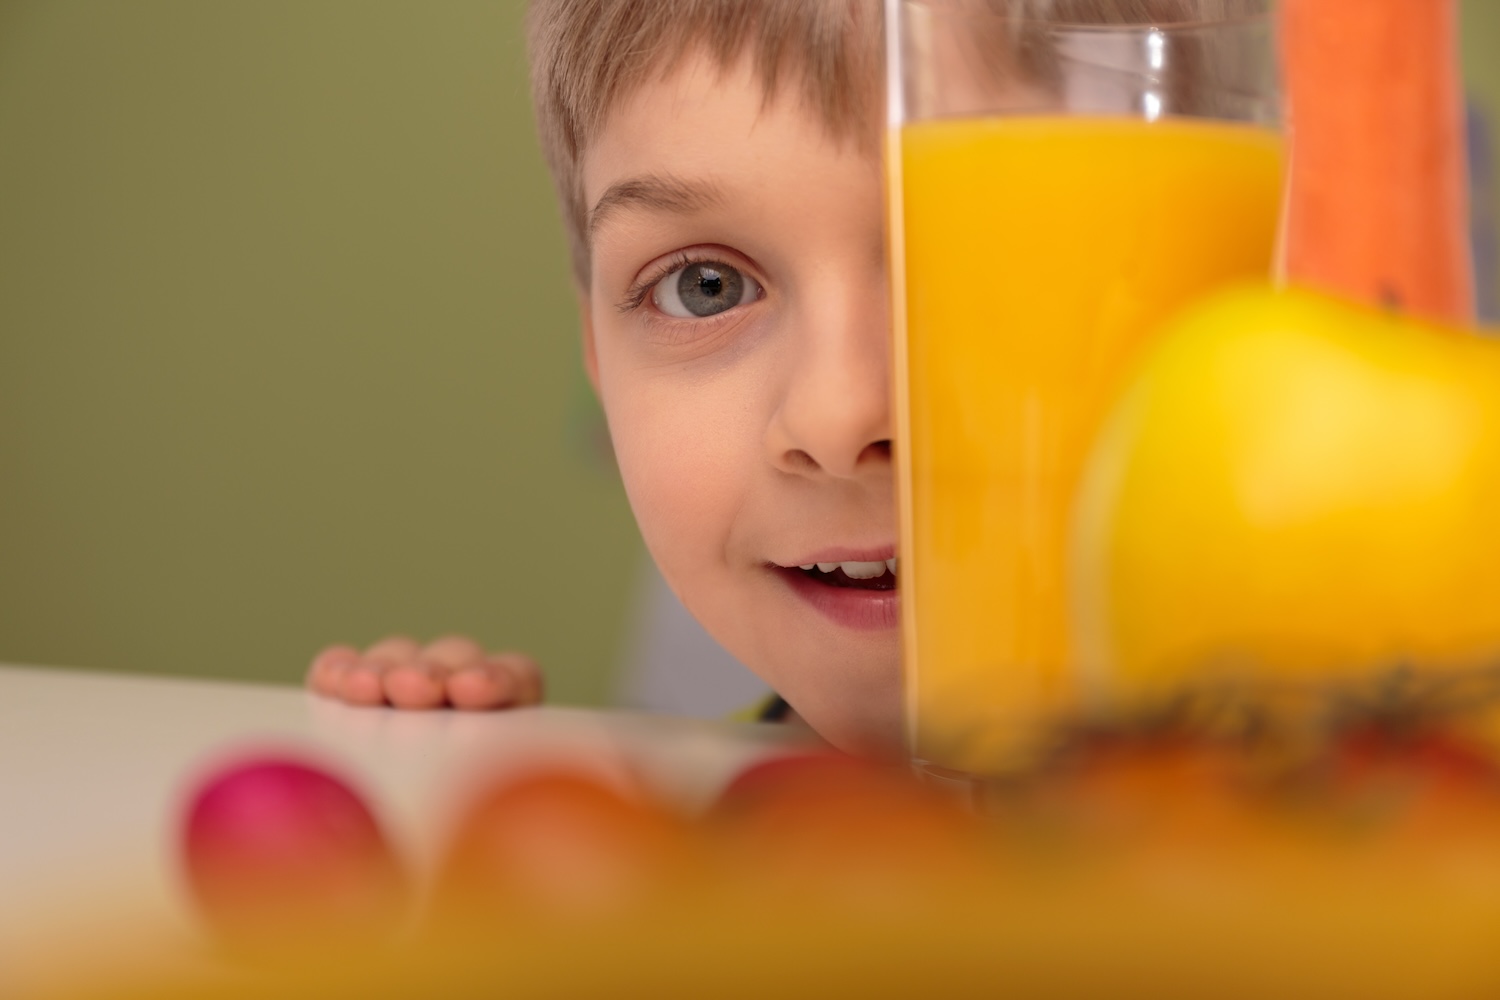 Заряд бодрости в одной маленькой пачке — фруктовые соки всегда представлены в школьном меню, фото